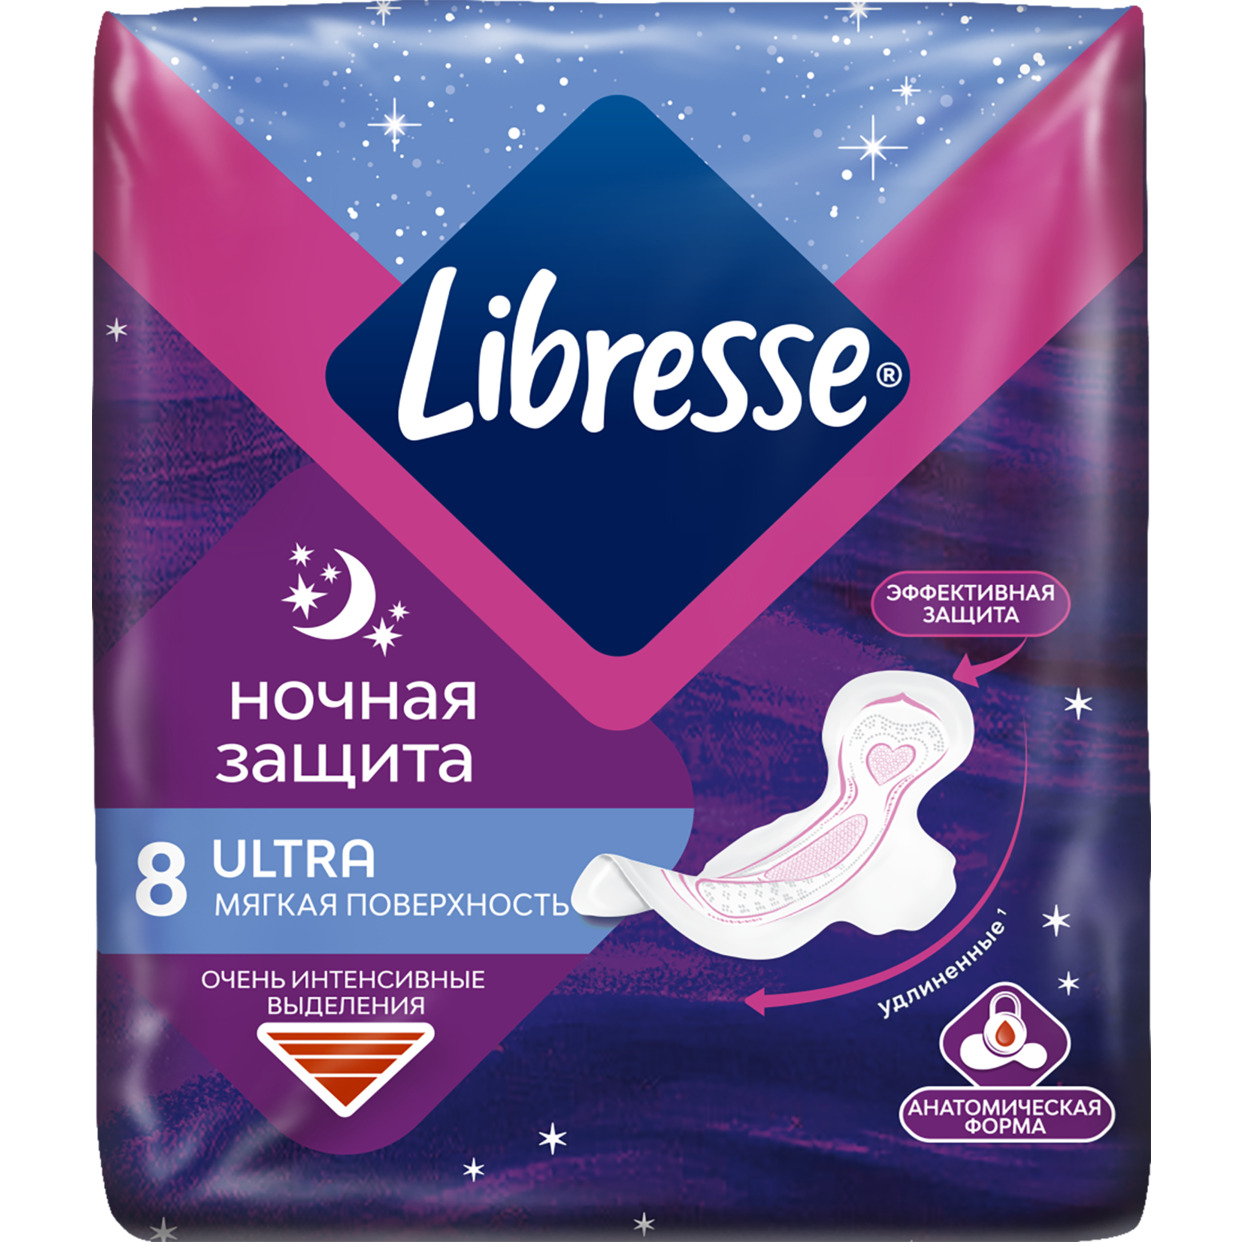 Акция в Пятерочке на Libresse Ultra Ультротонкие гигиенические прокладки Ночные с мягкой поверхностью, 8шт